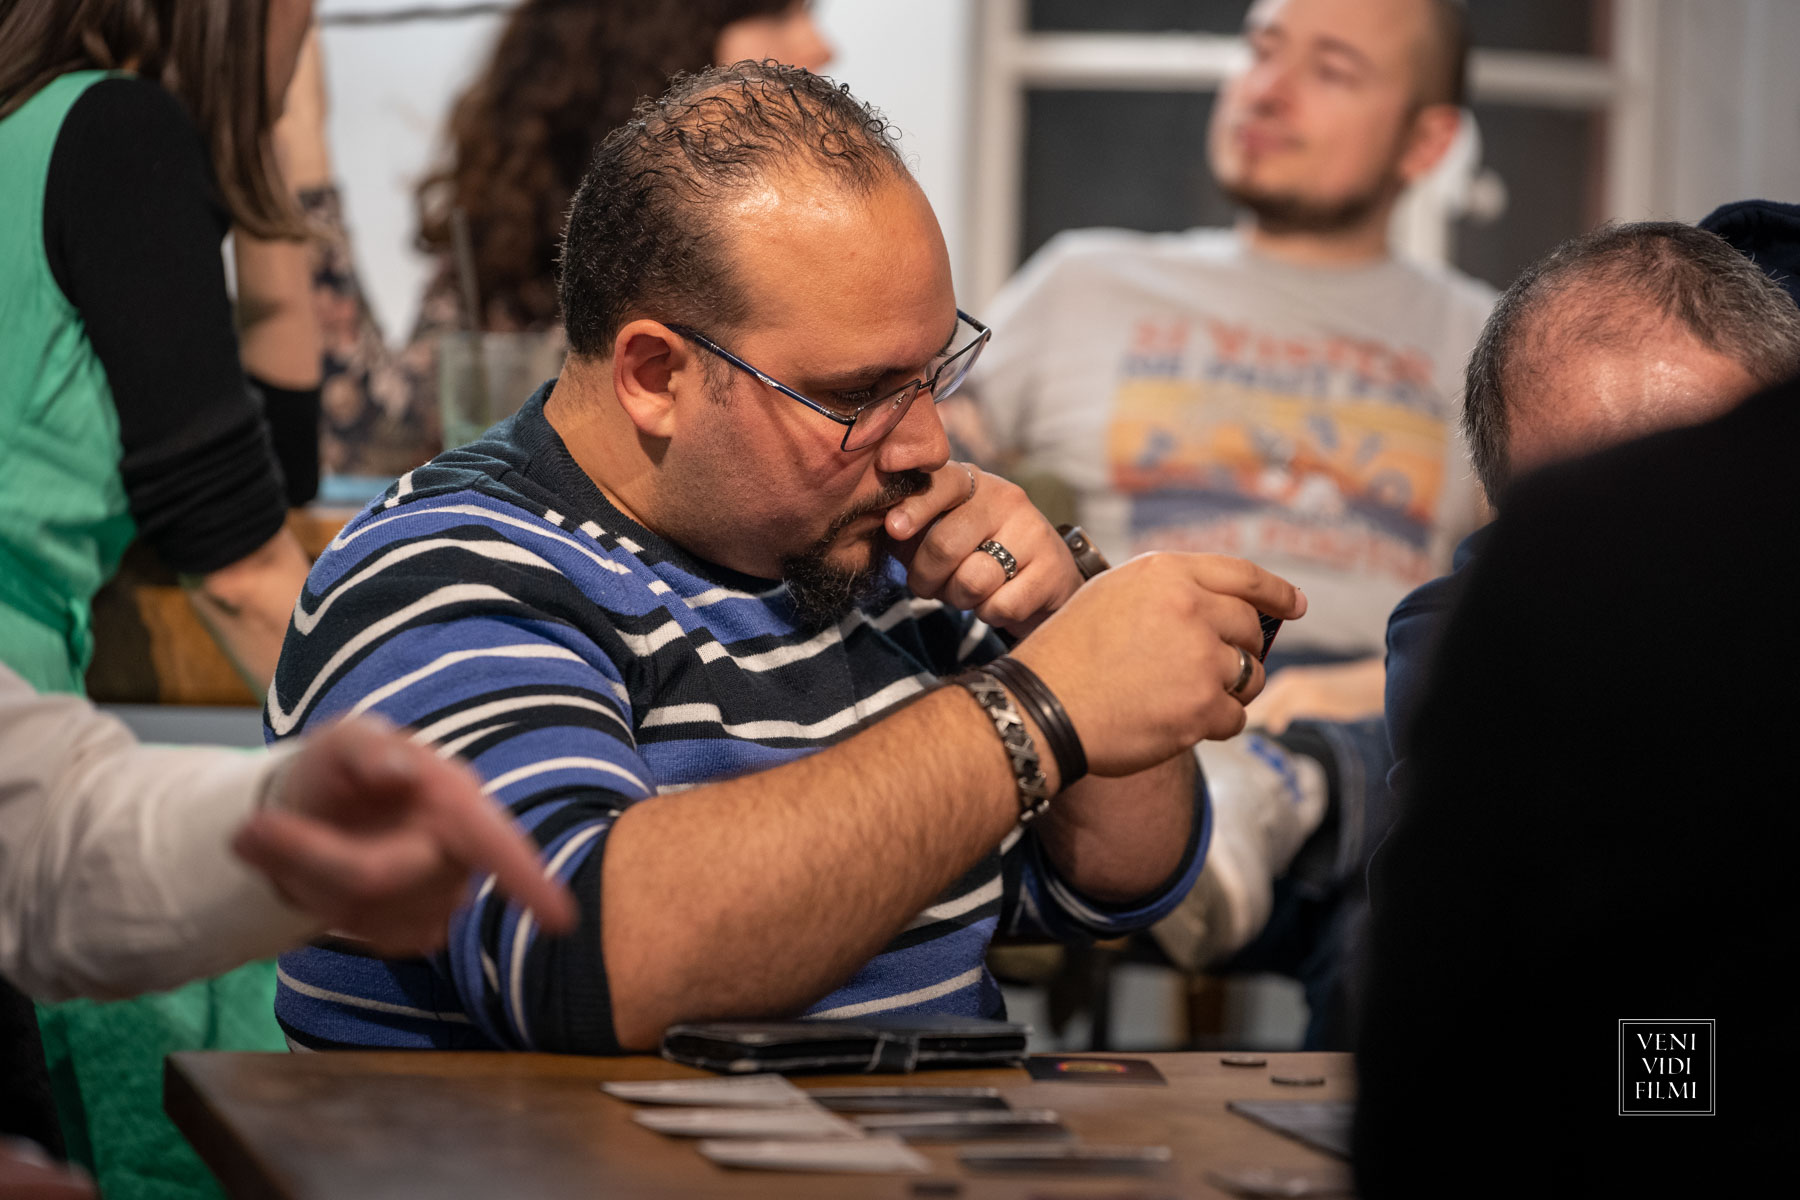 Homme participant à un tournoi de jeu de cartes